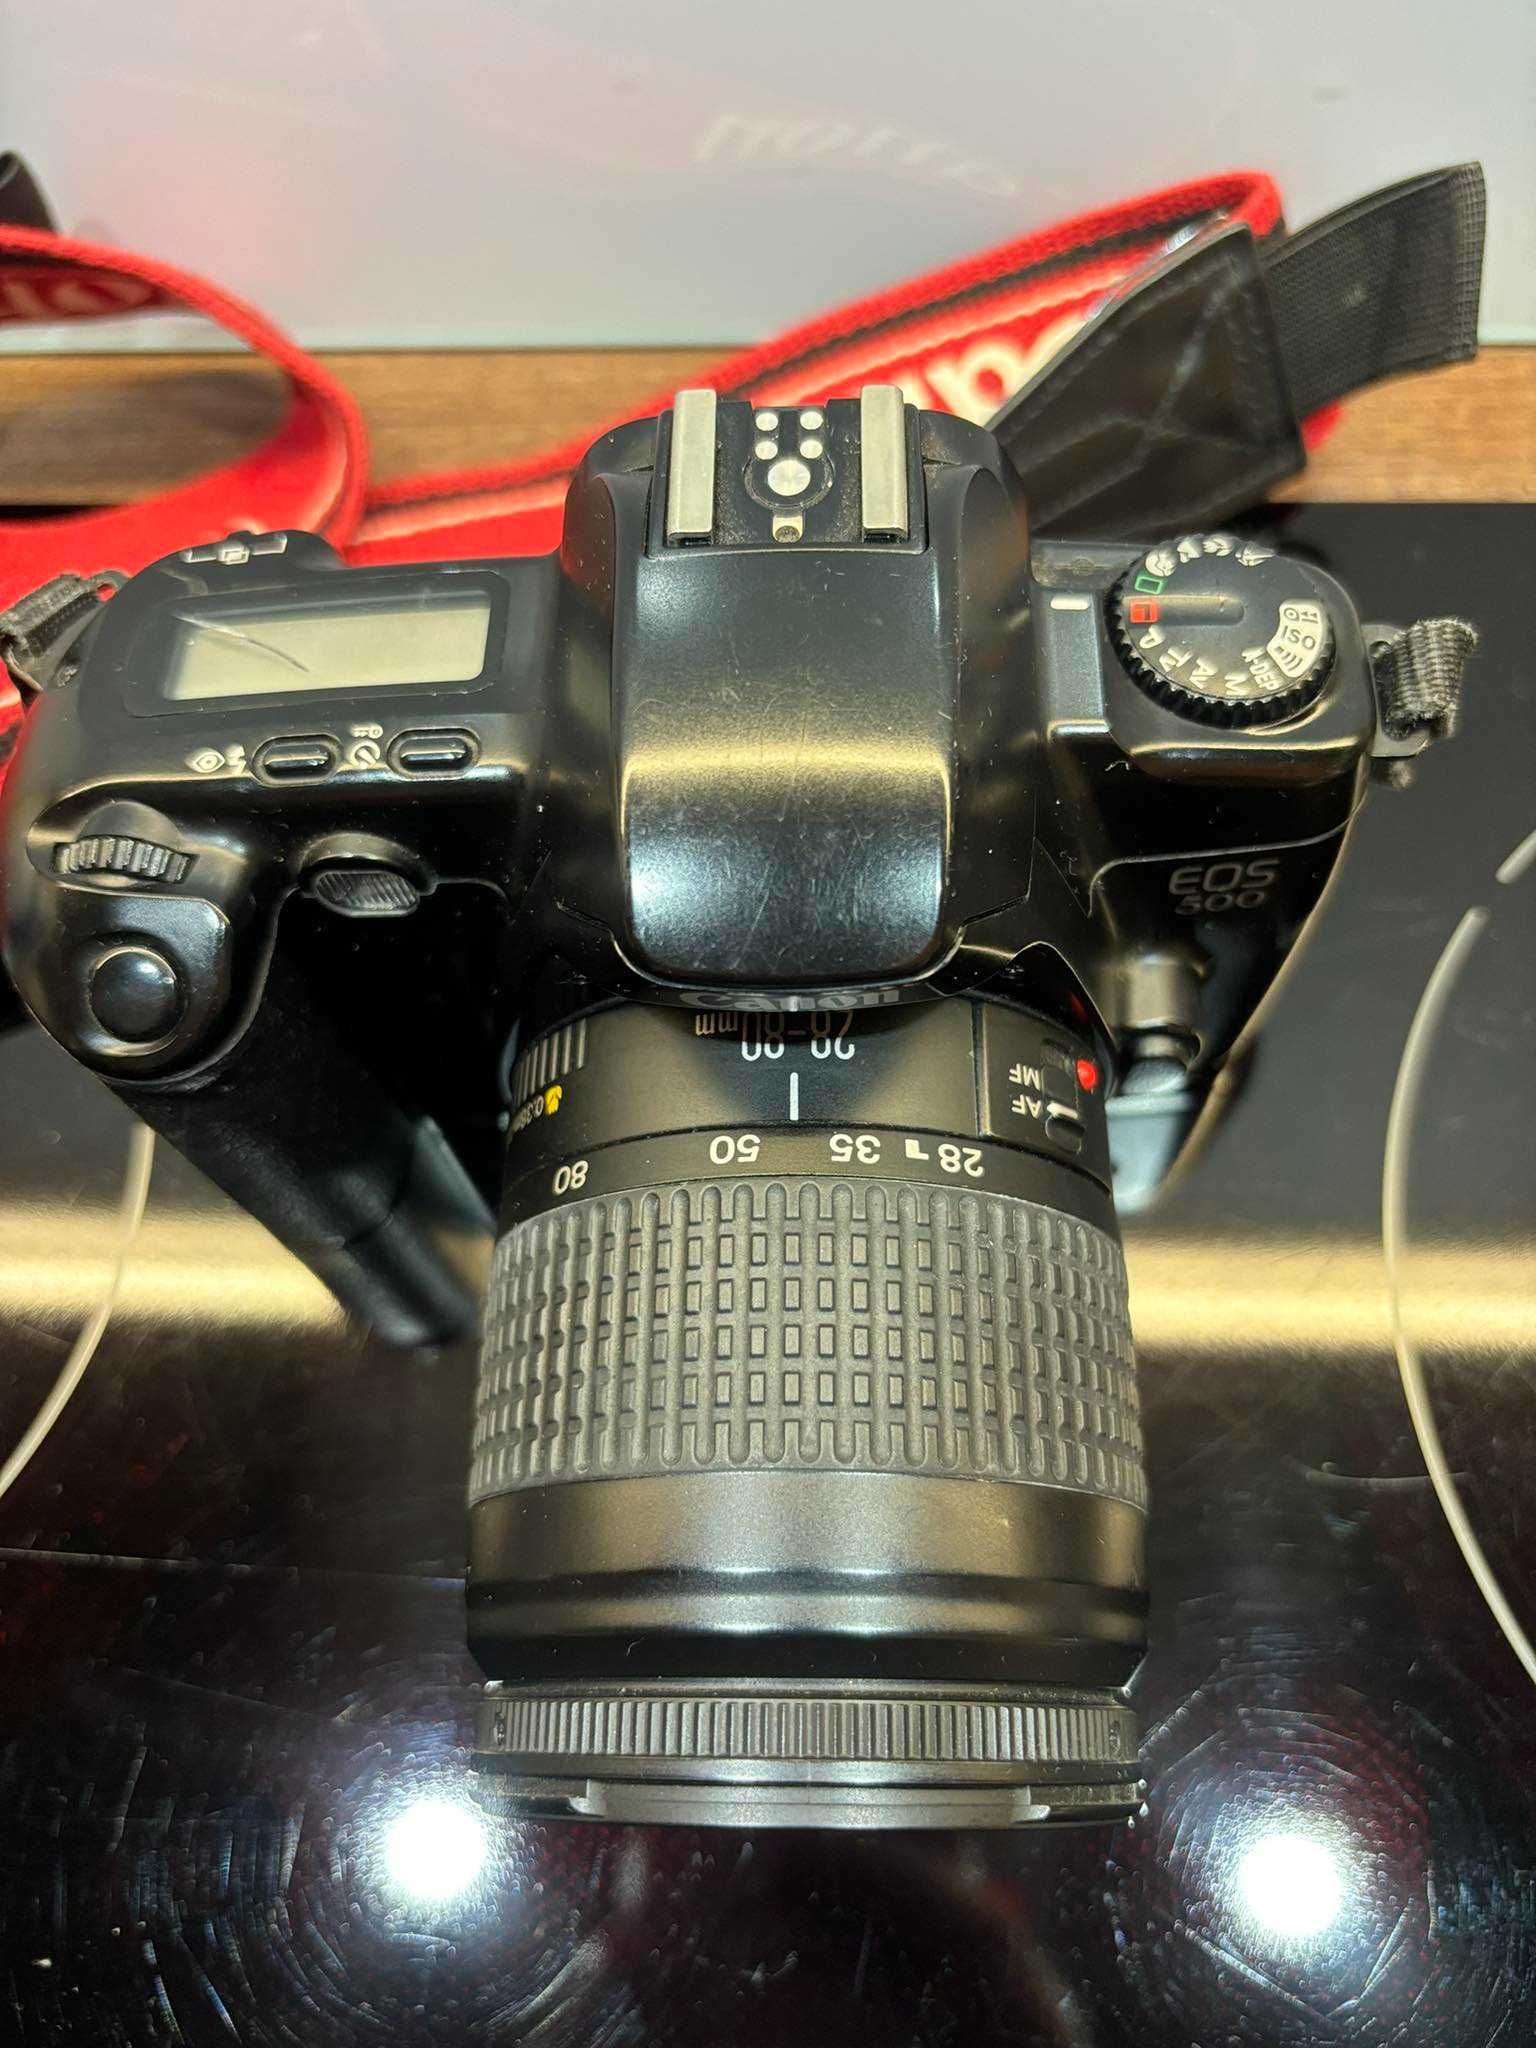 Lustrzanka Canon 500 + obiektyw + pokrowiec